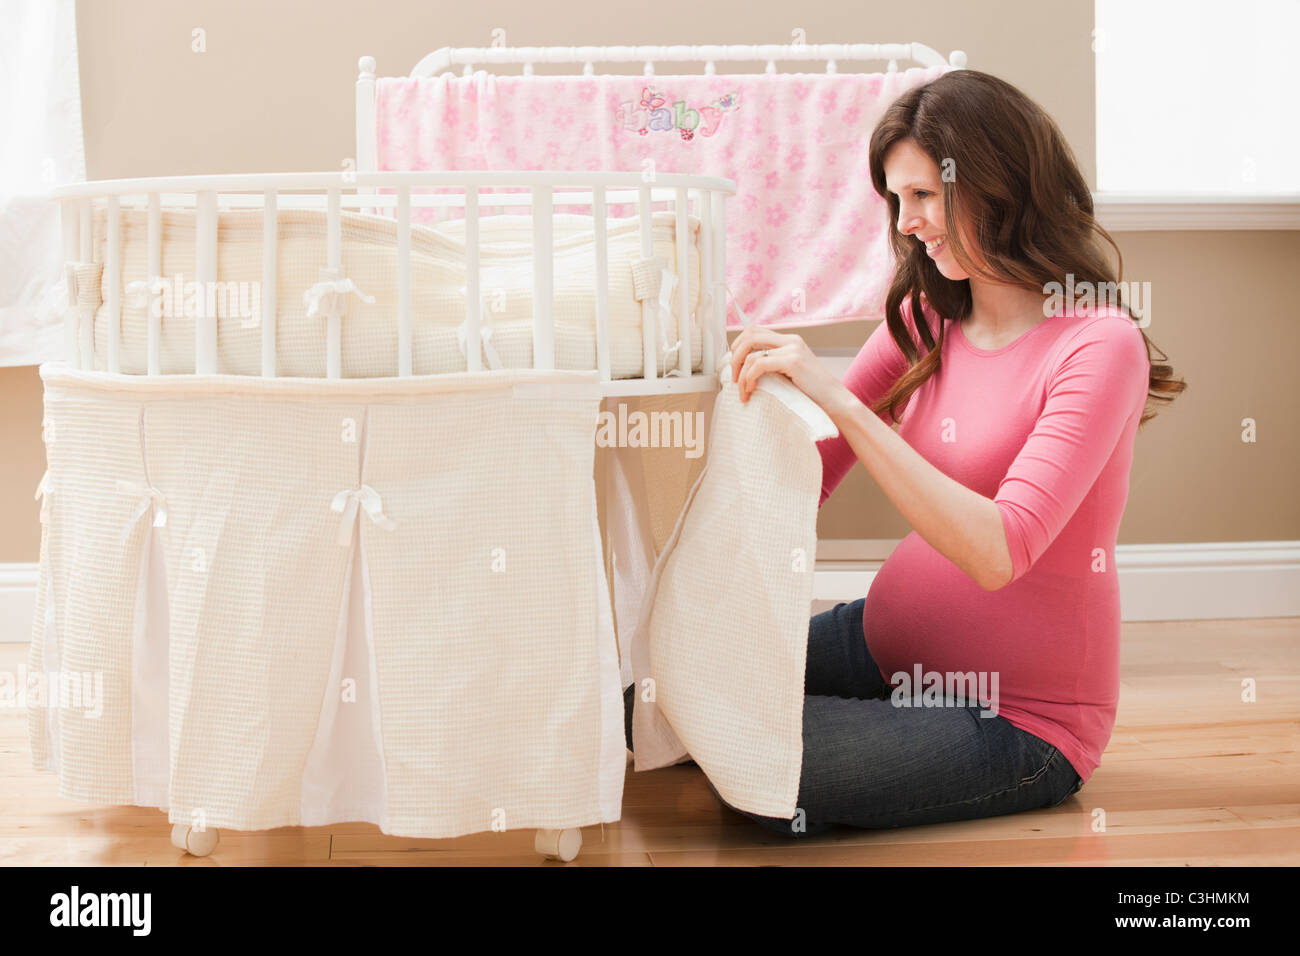 Junge schwangere Frau Laufstall für neues Baby vorbereiten Stockfoto